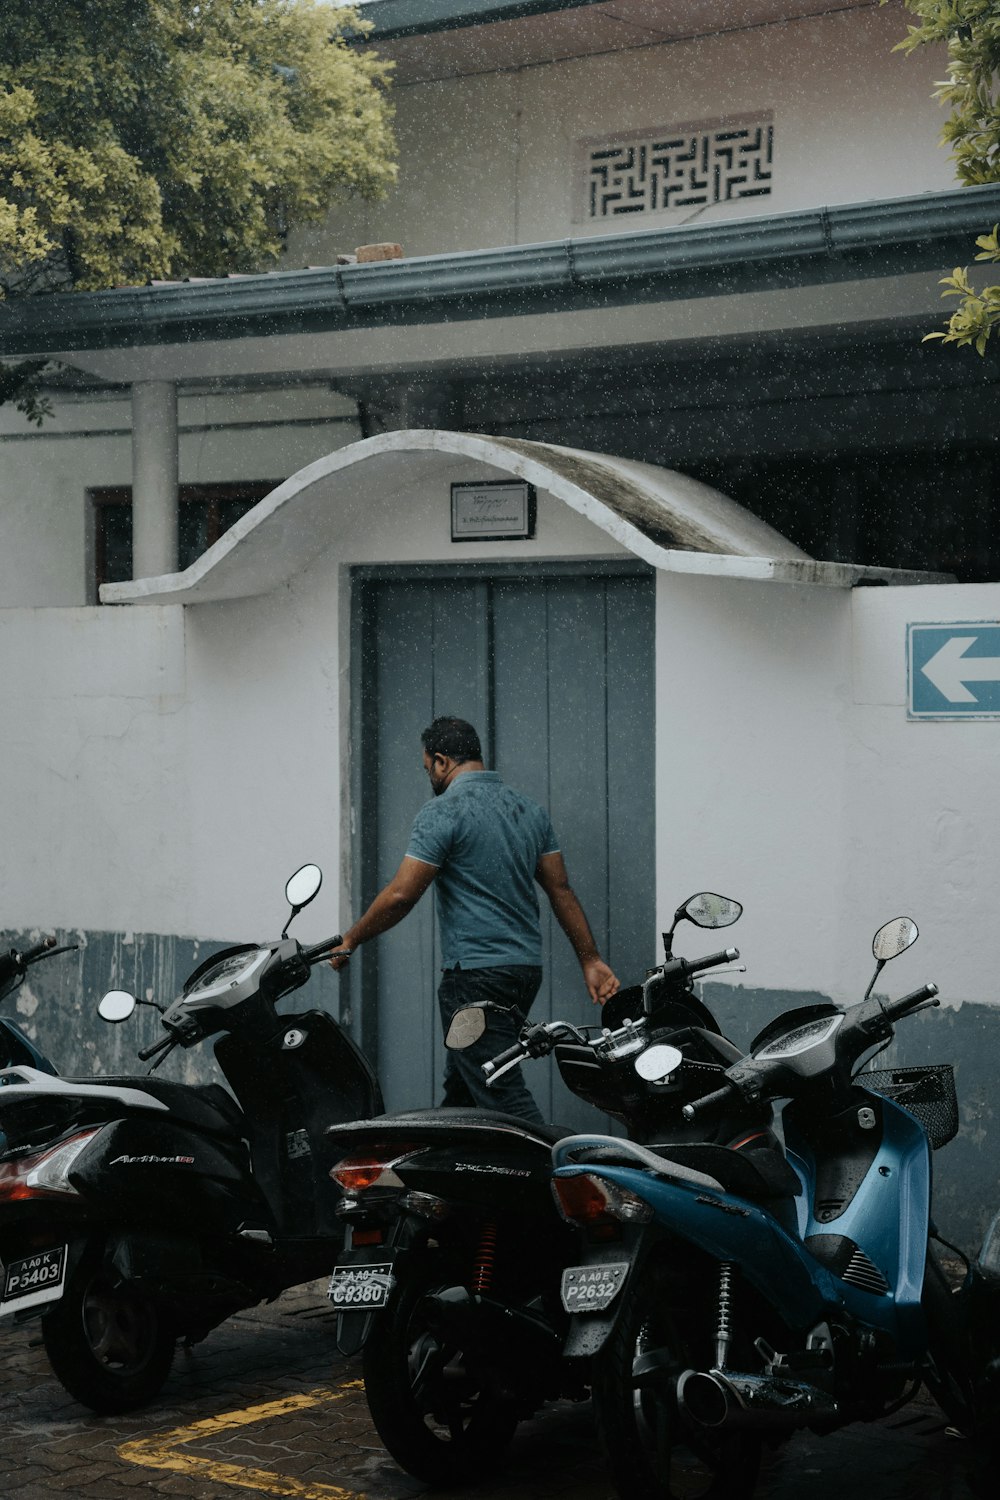 Mann im grauen T-Shirt fährt auf schwarzem Motorrad